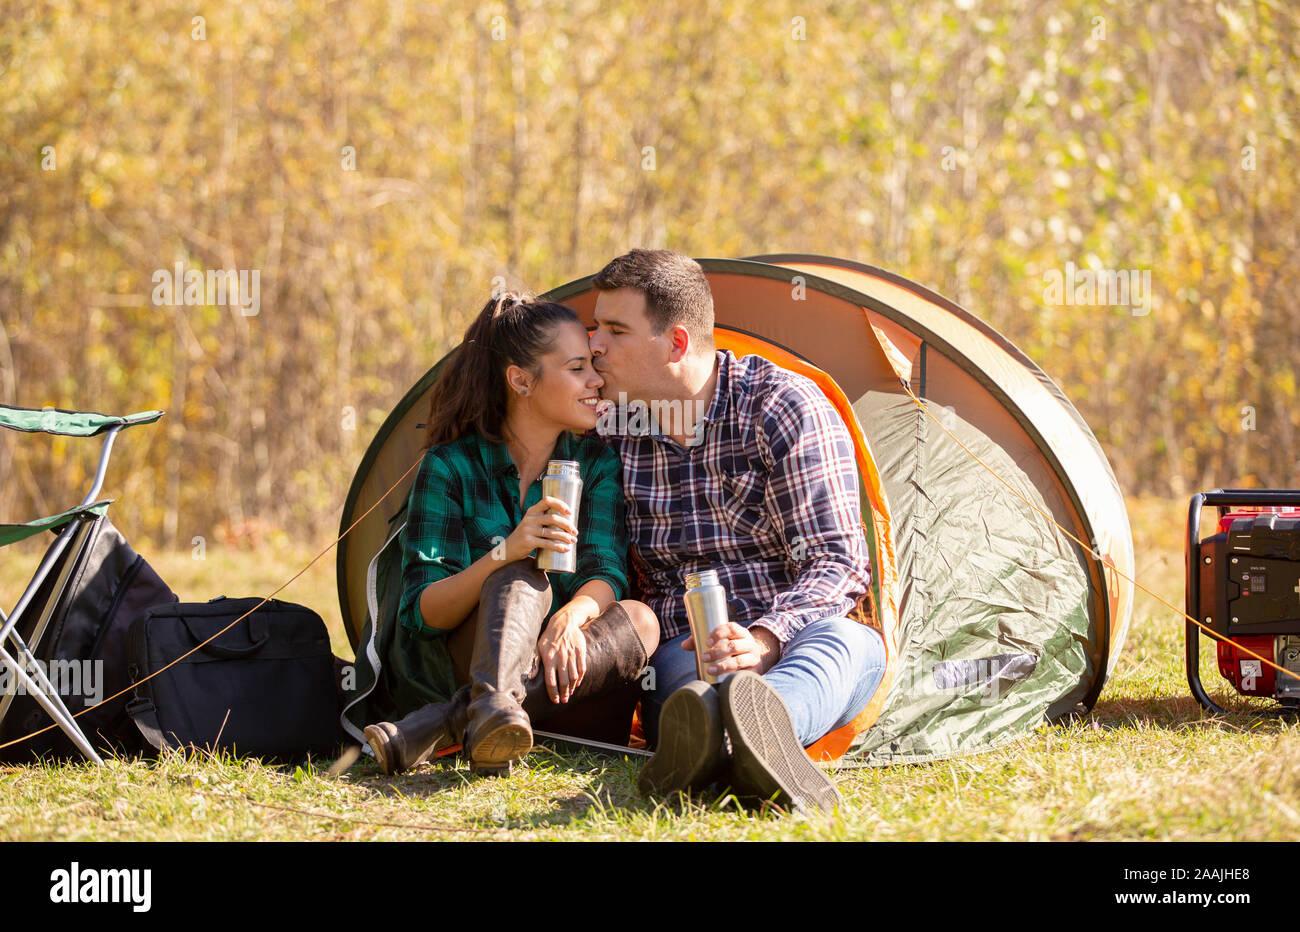 Ambiance romantique sous la tente